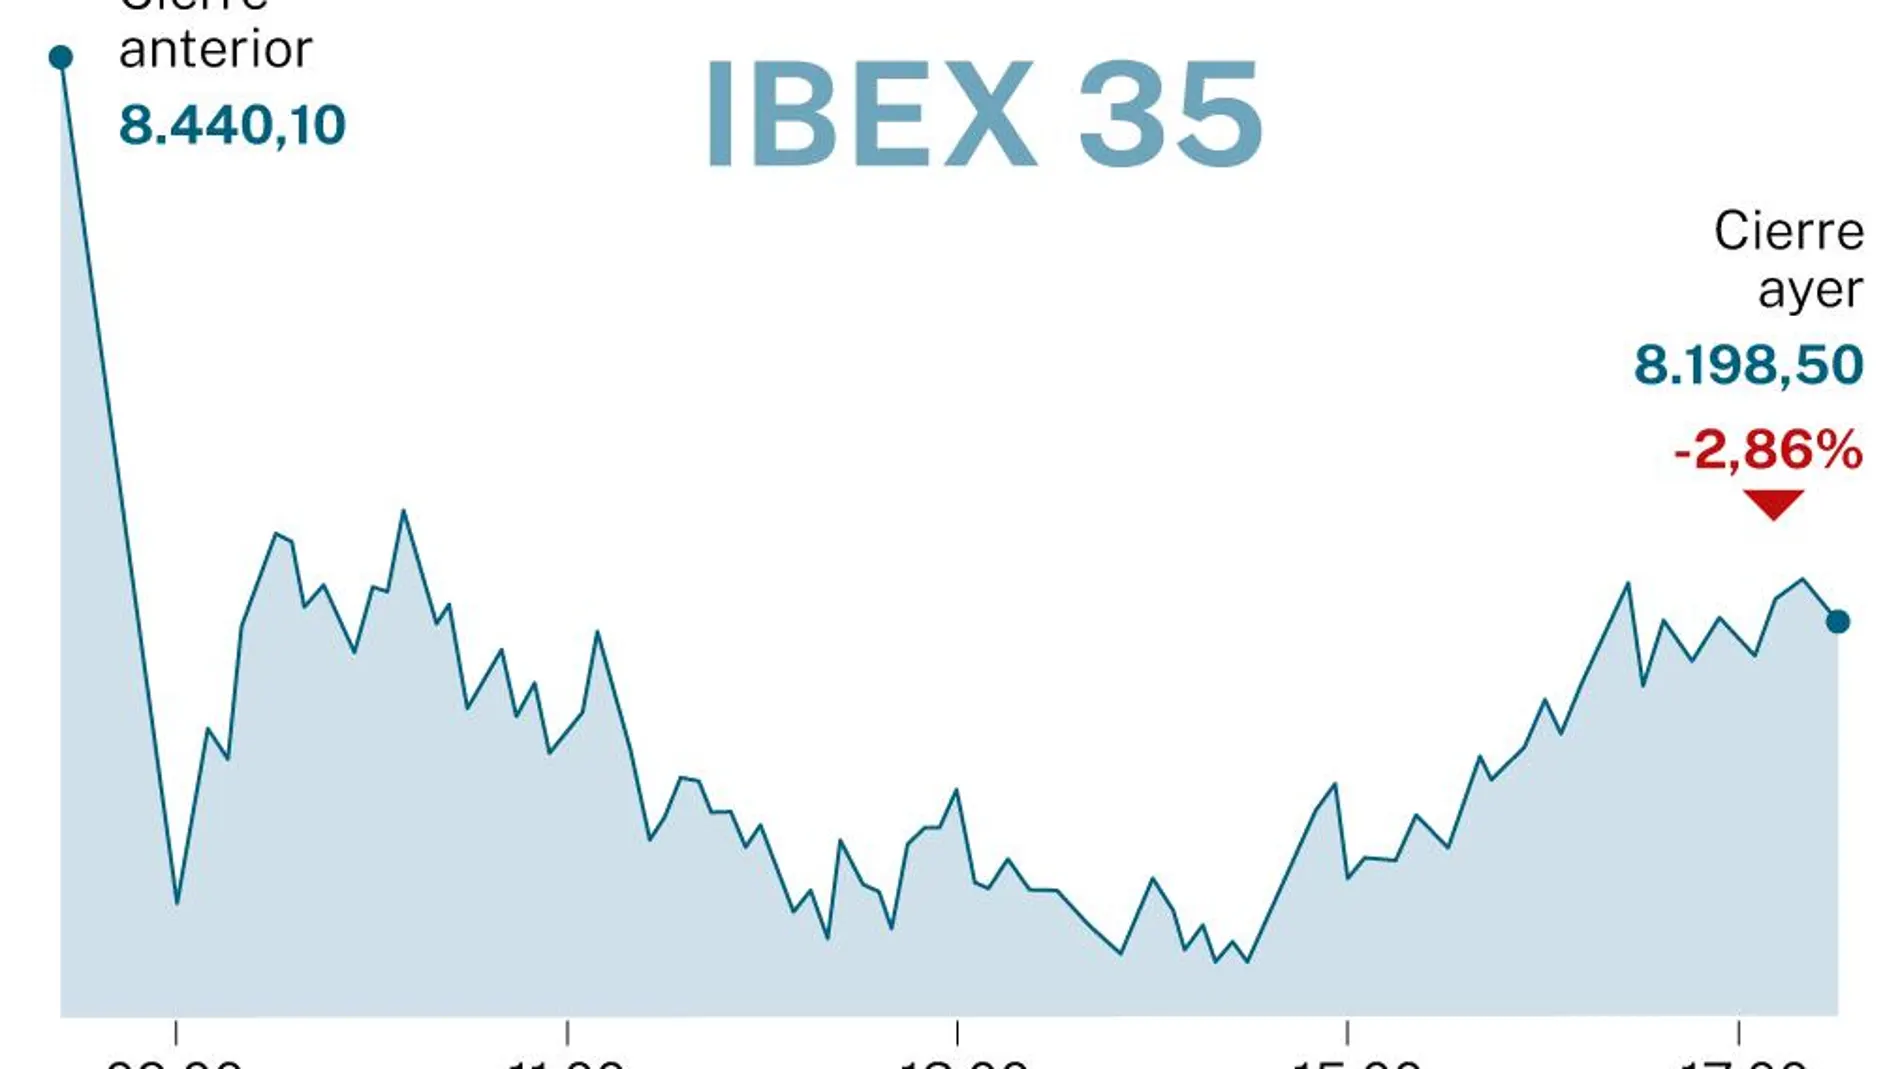 Ibex 35